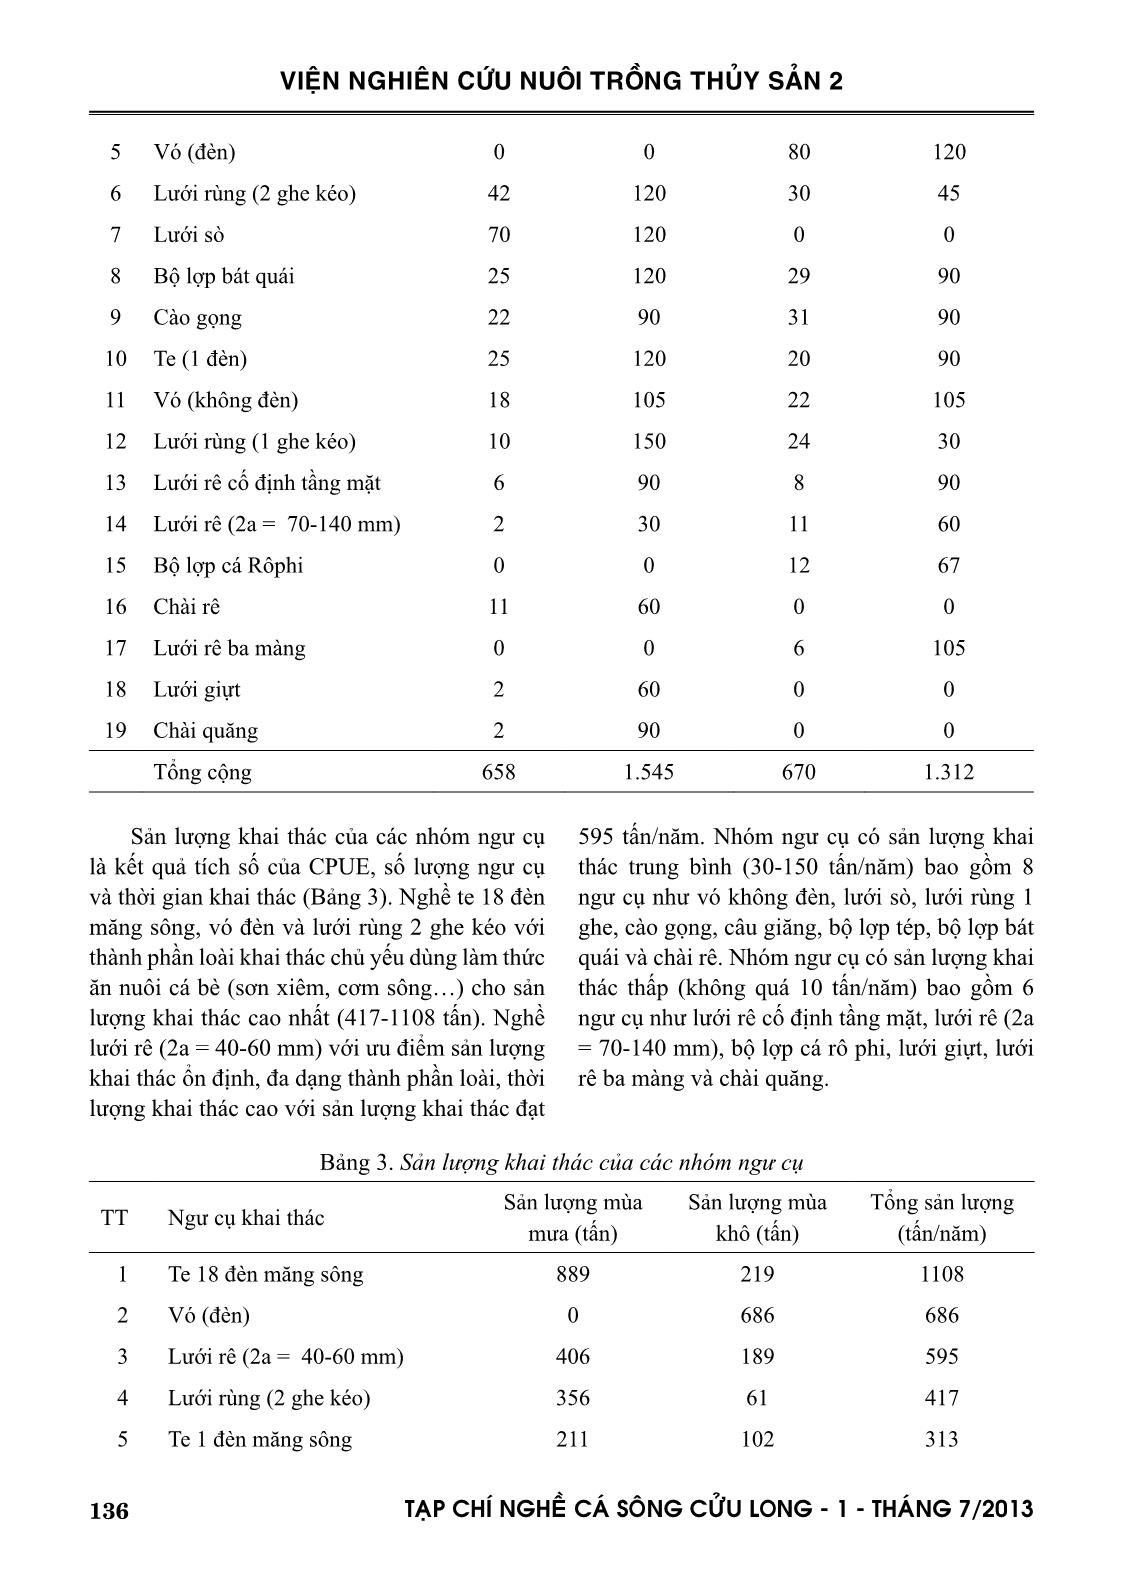 Đánh giá sản lượng thủy sản khai thác qua khảo sát ngư cụ và thành phần loài cá khai thác ở hồ Trị An trang 4